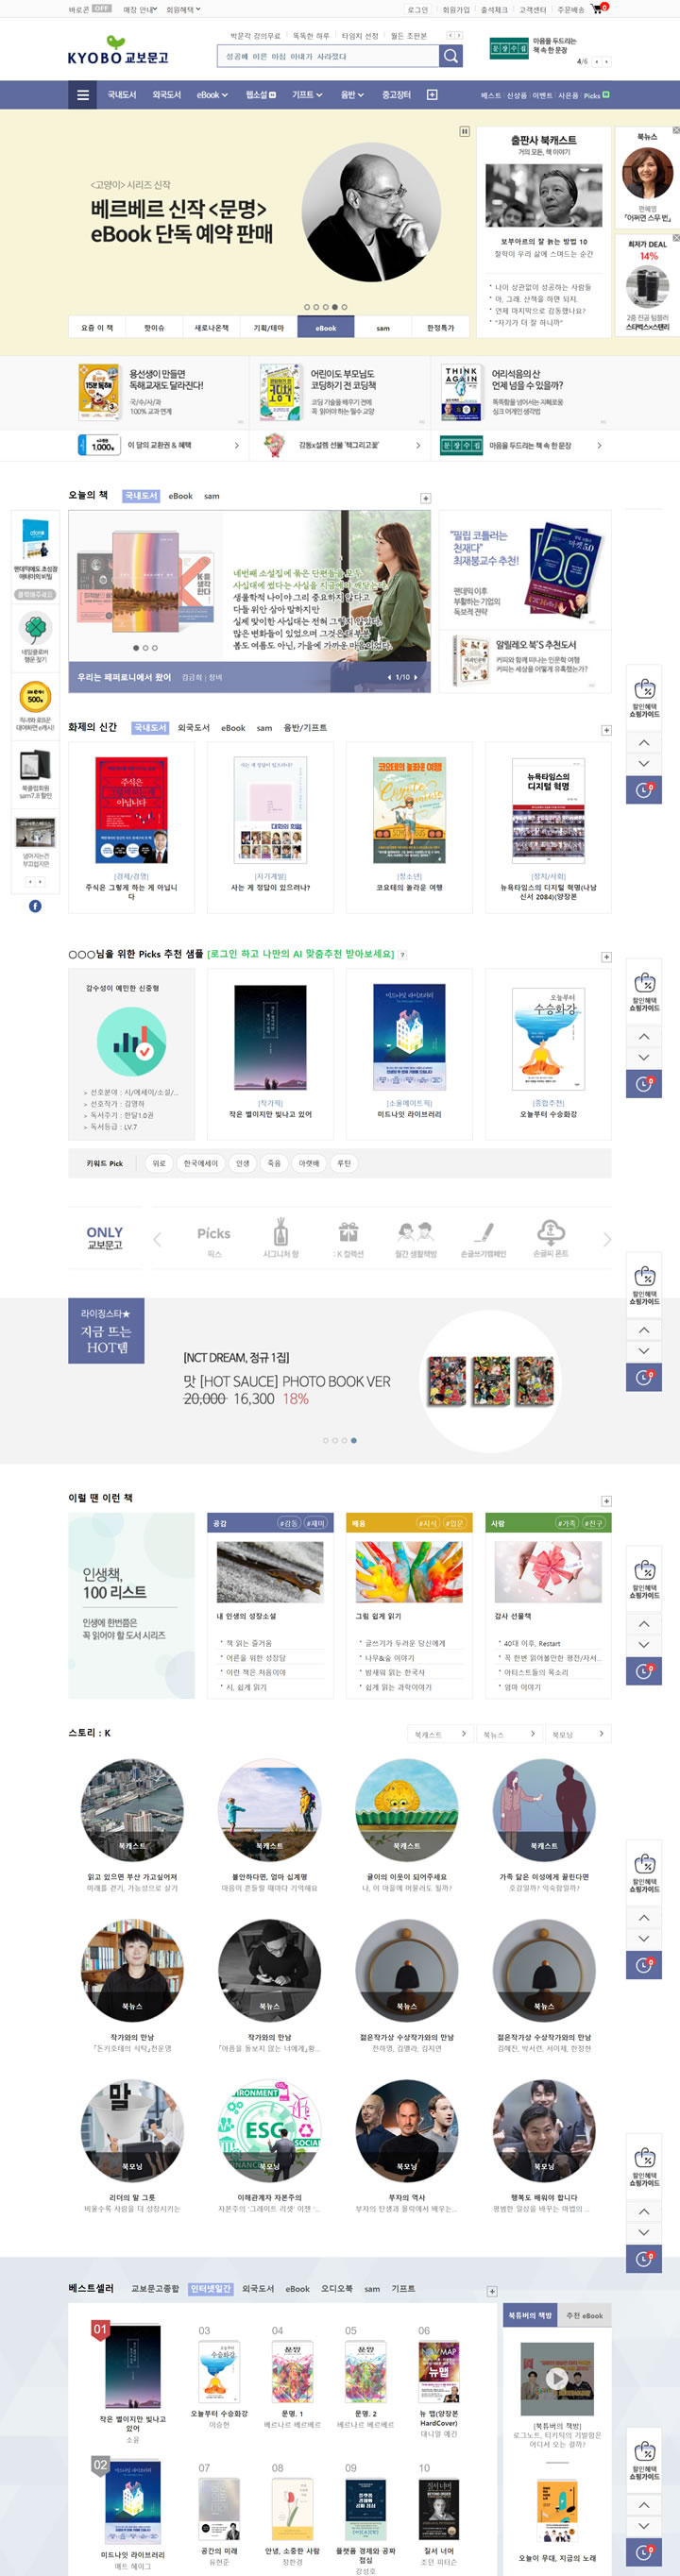 韩国最大的书店连锁店：Kyobo教保文库